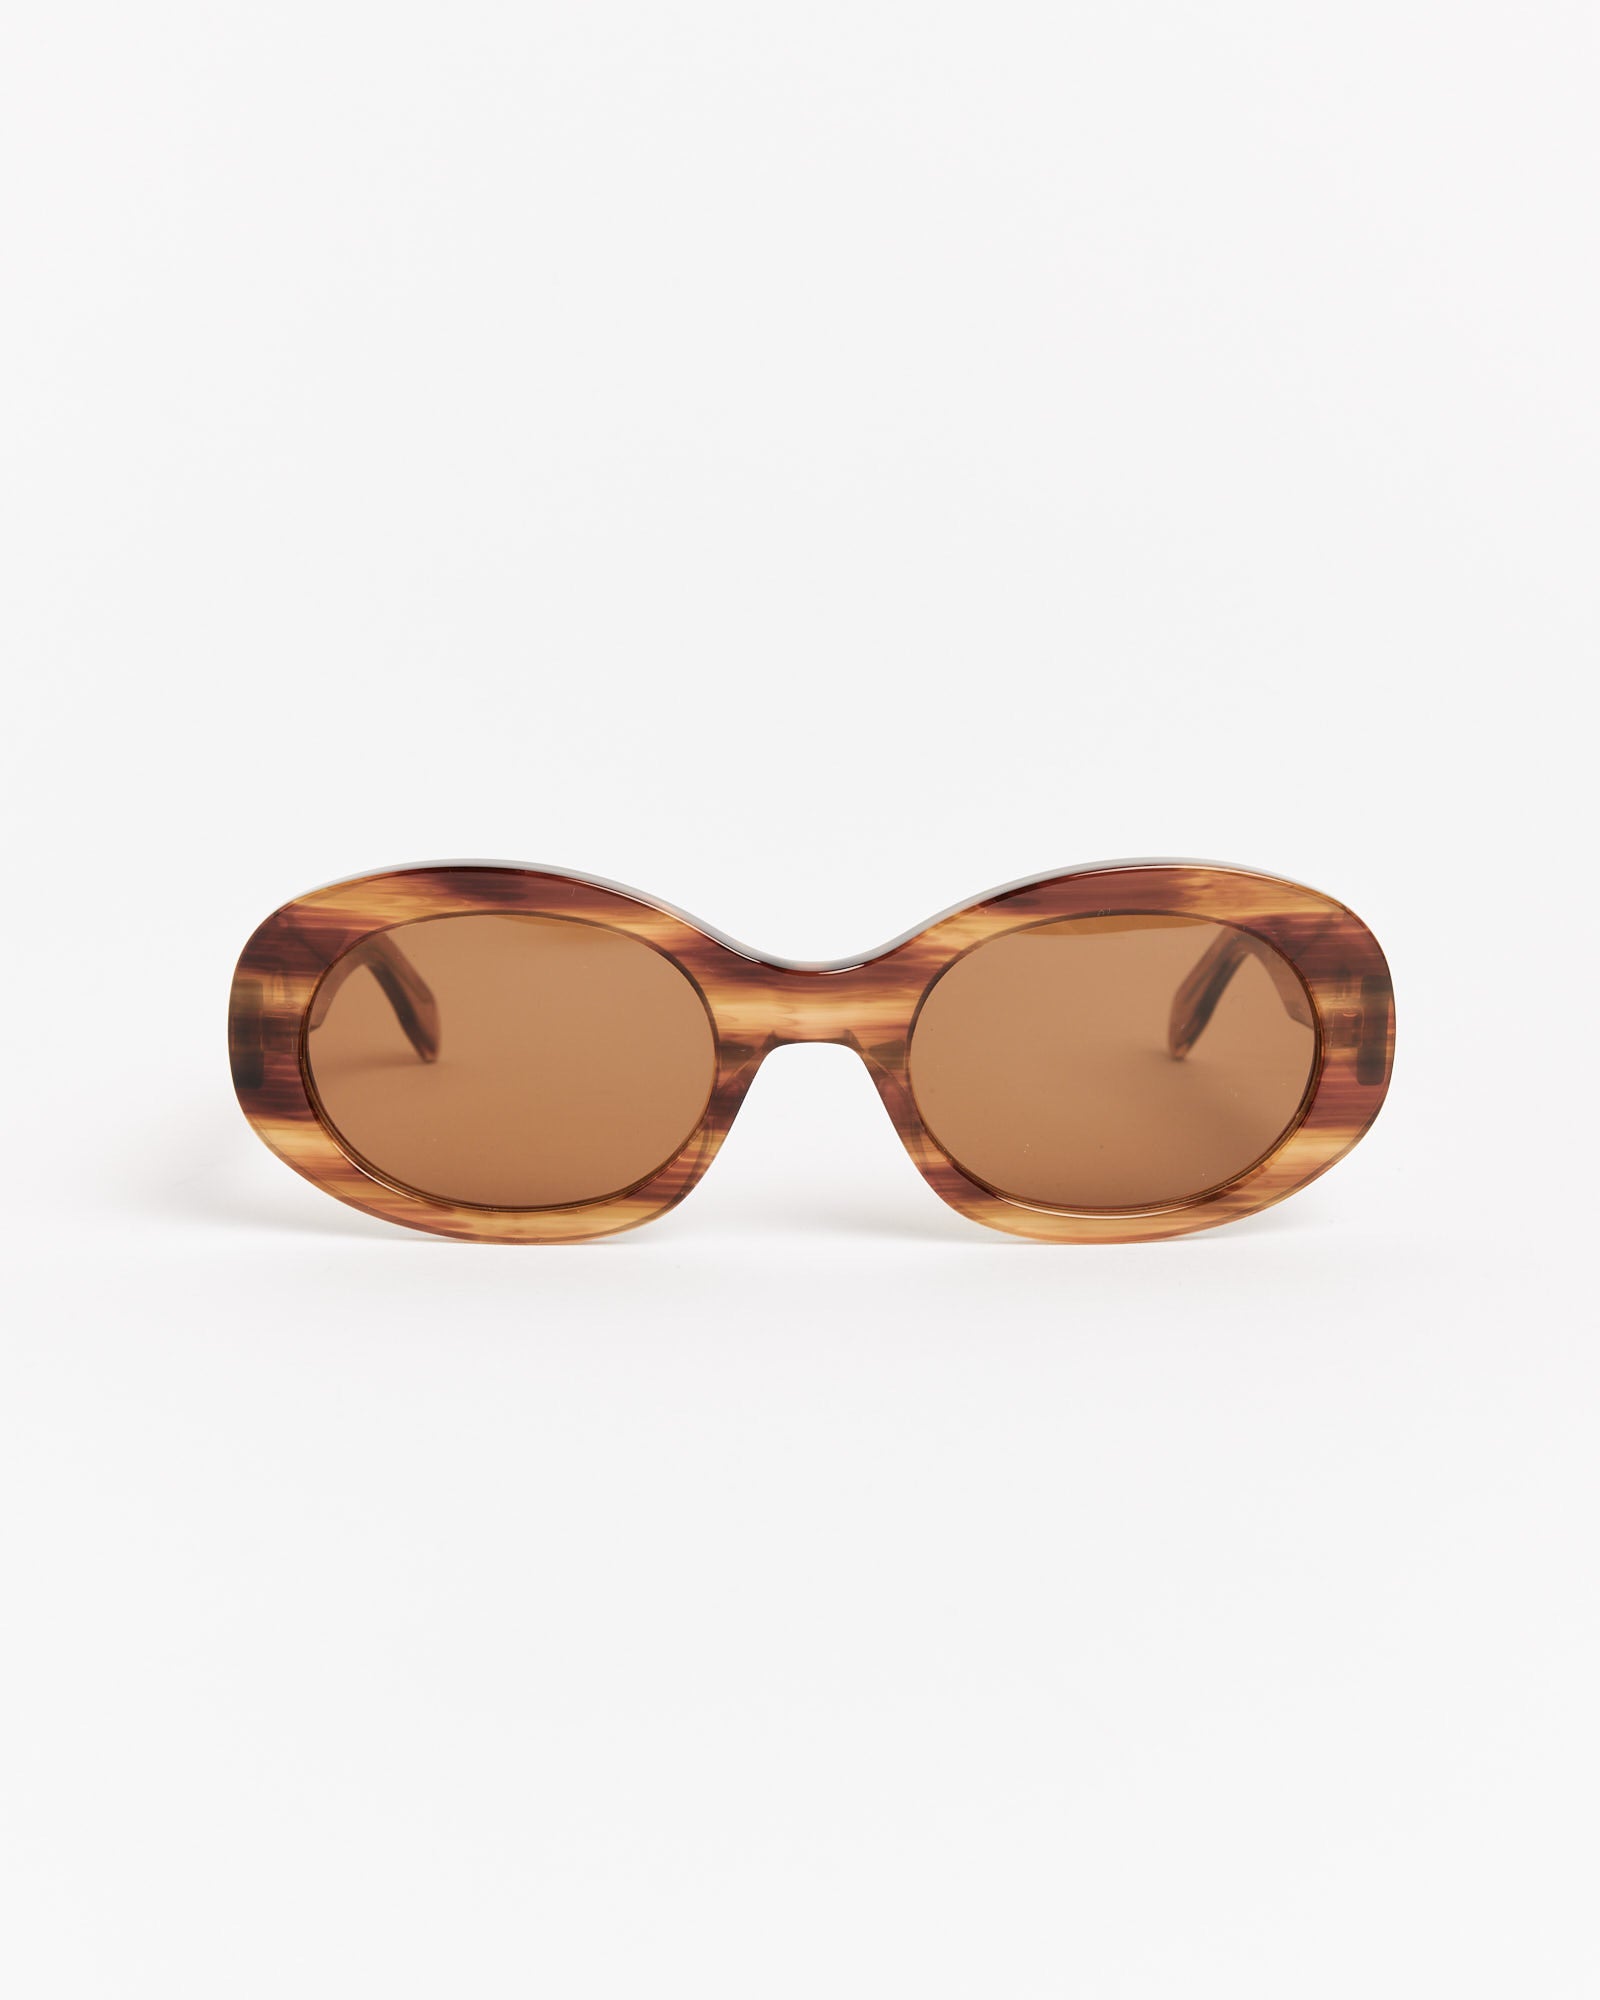 Orbit Sunglasses in Melange